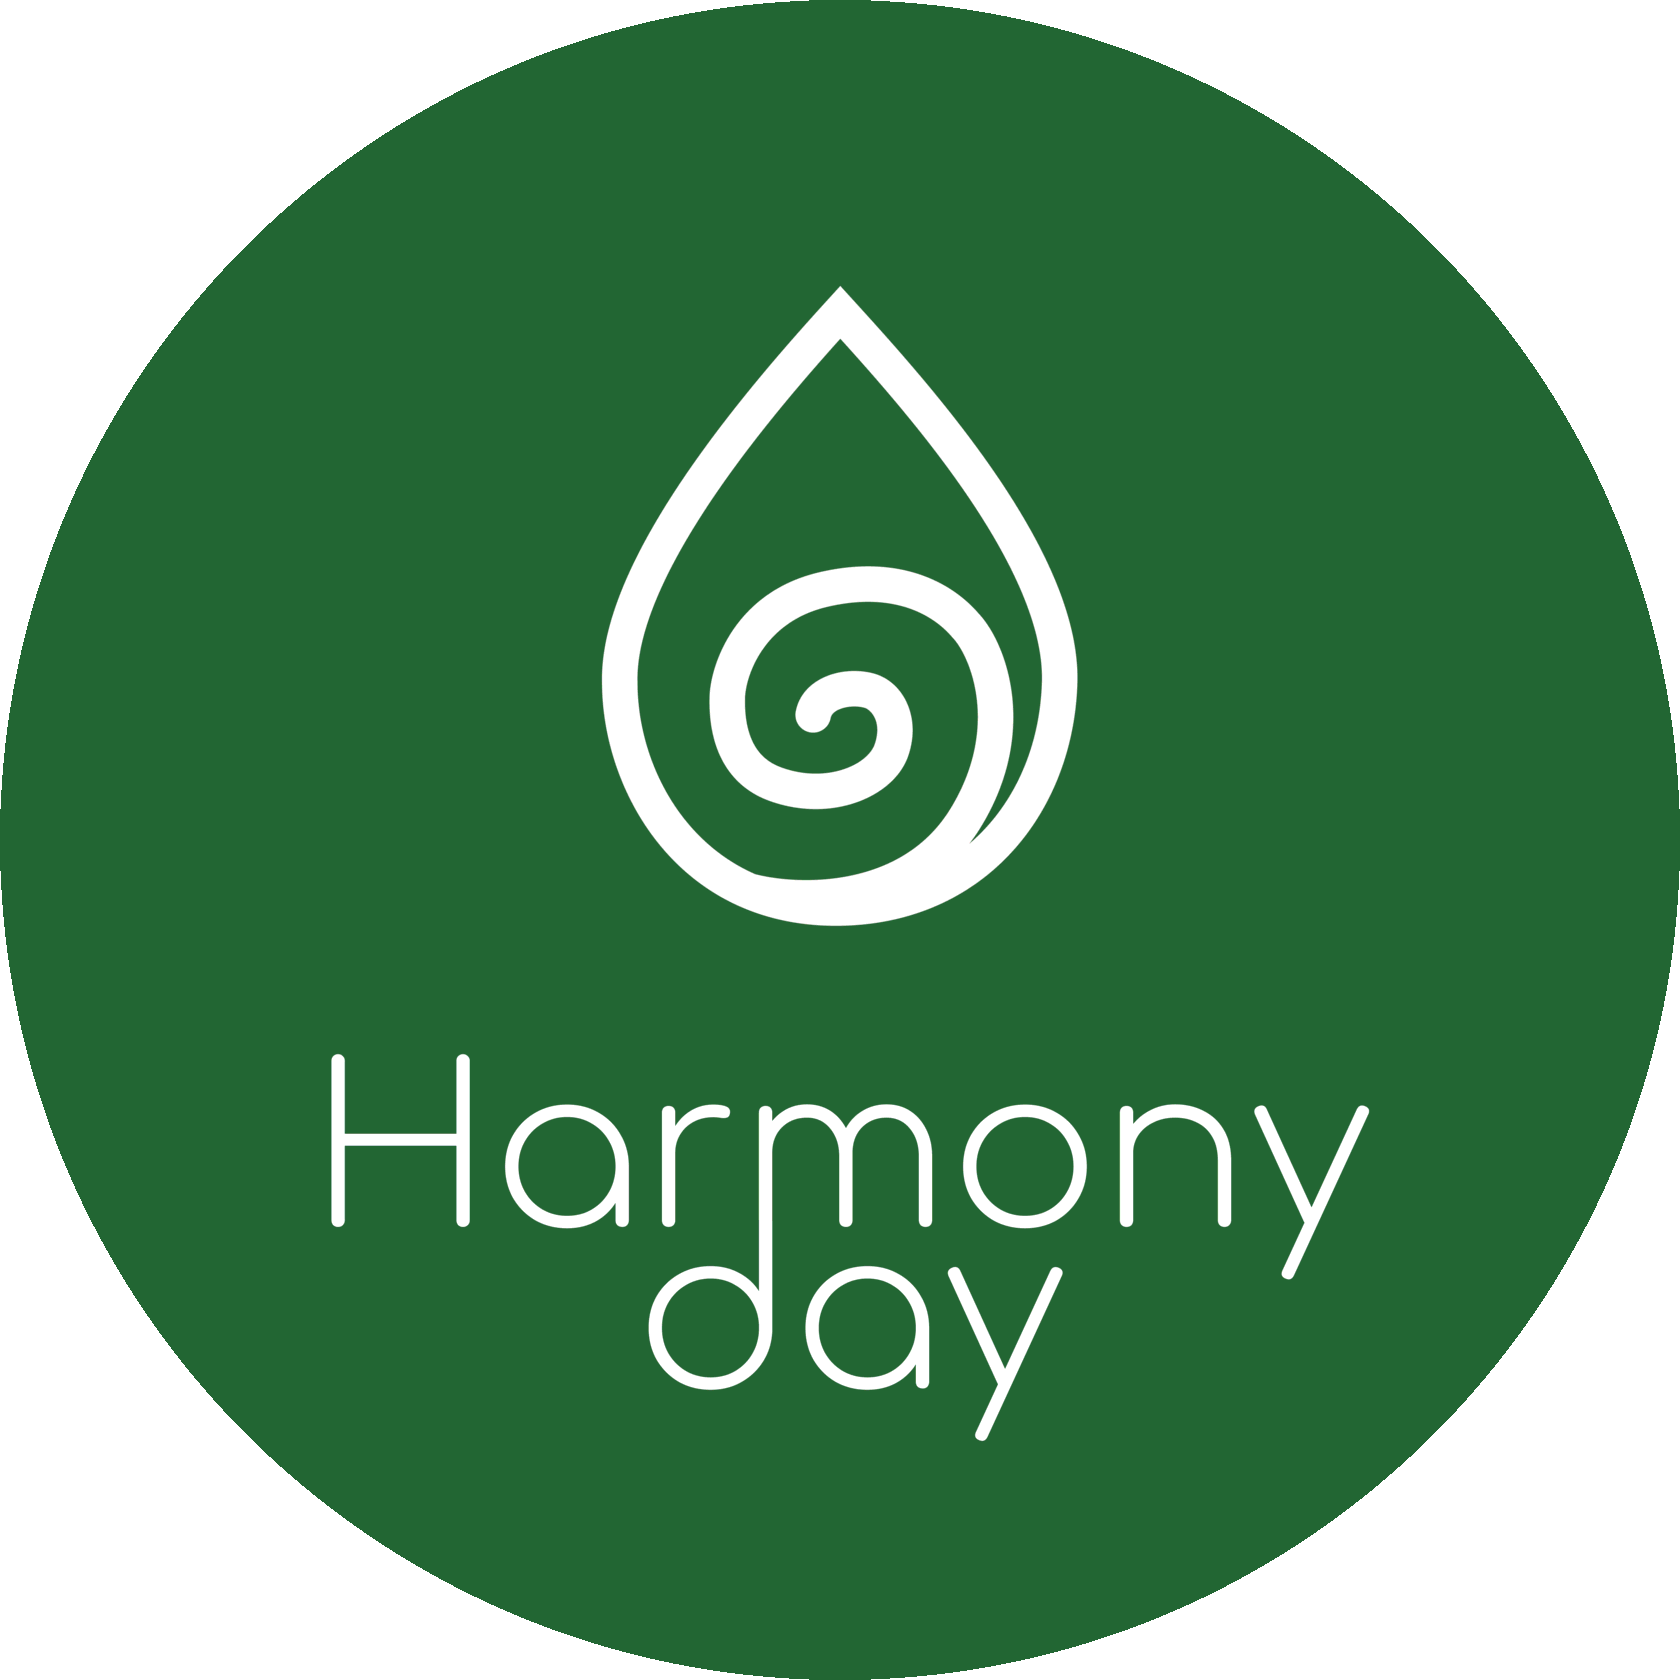 Harmony day